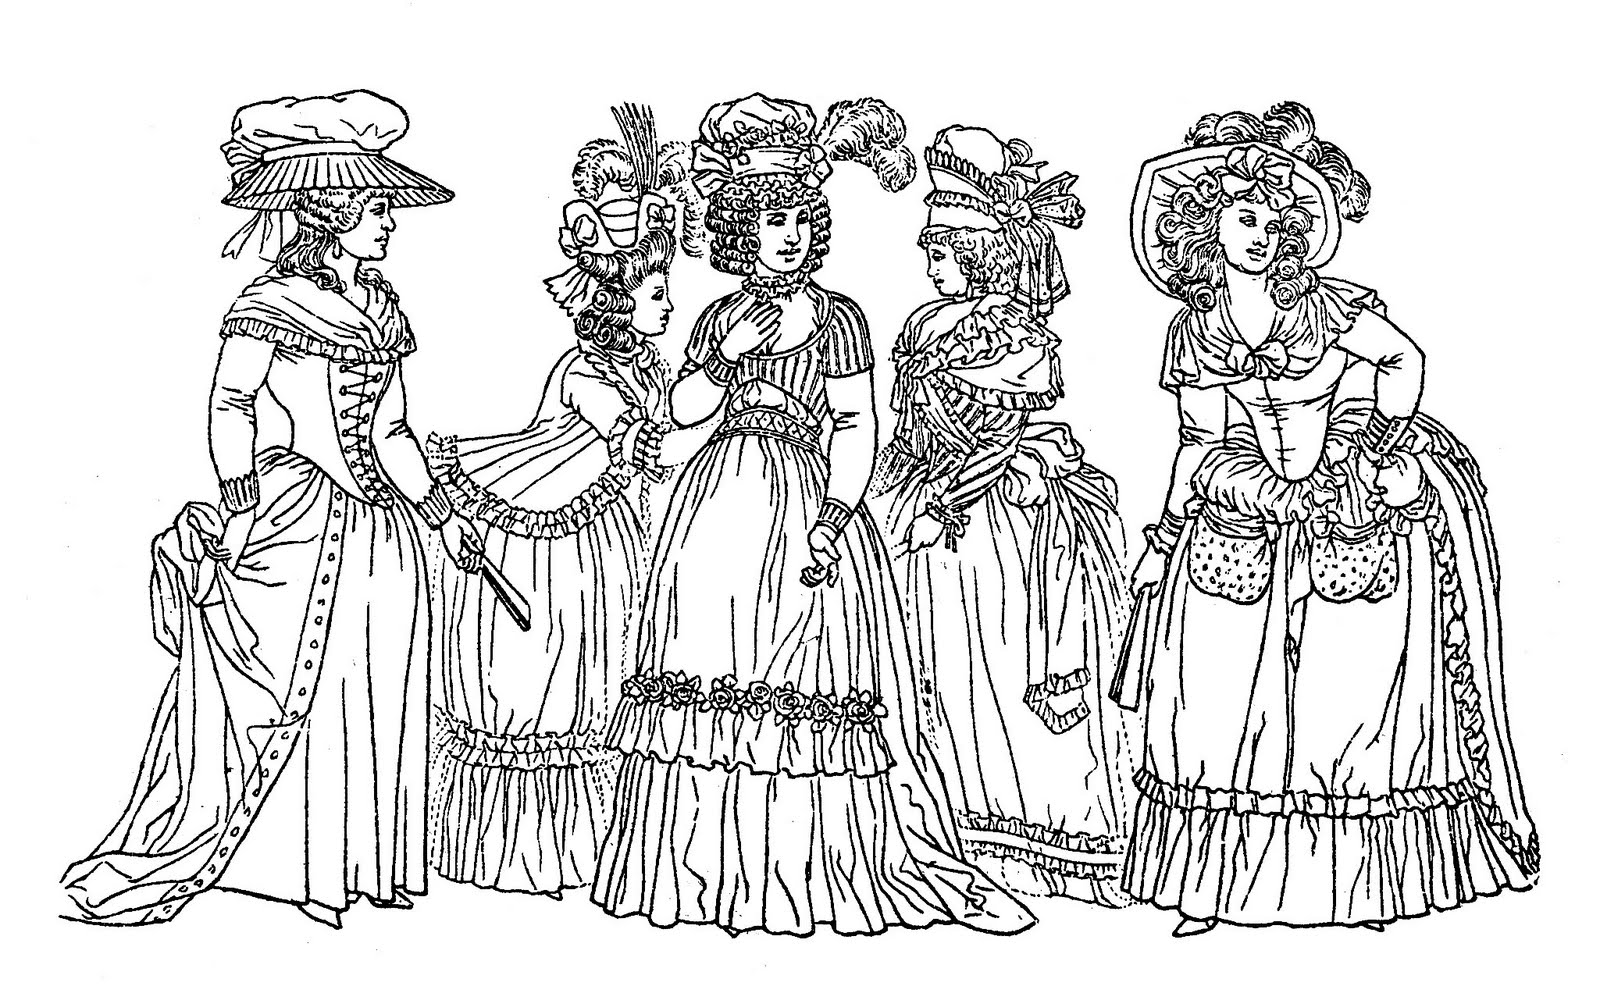 Dibujo de mujeres del siglo XVIII, que representa el estilo de moda de esta época